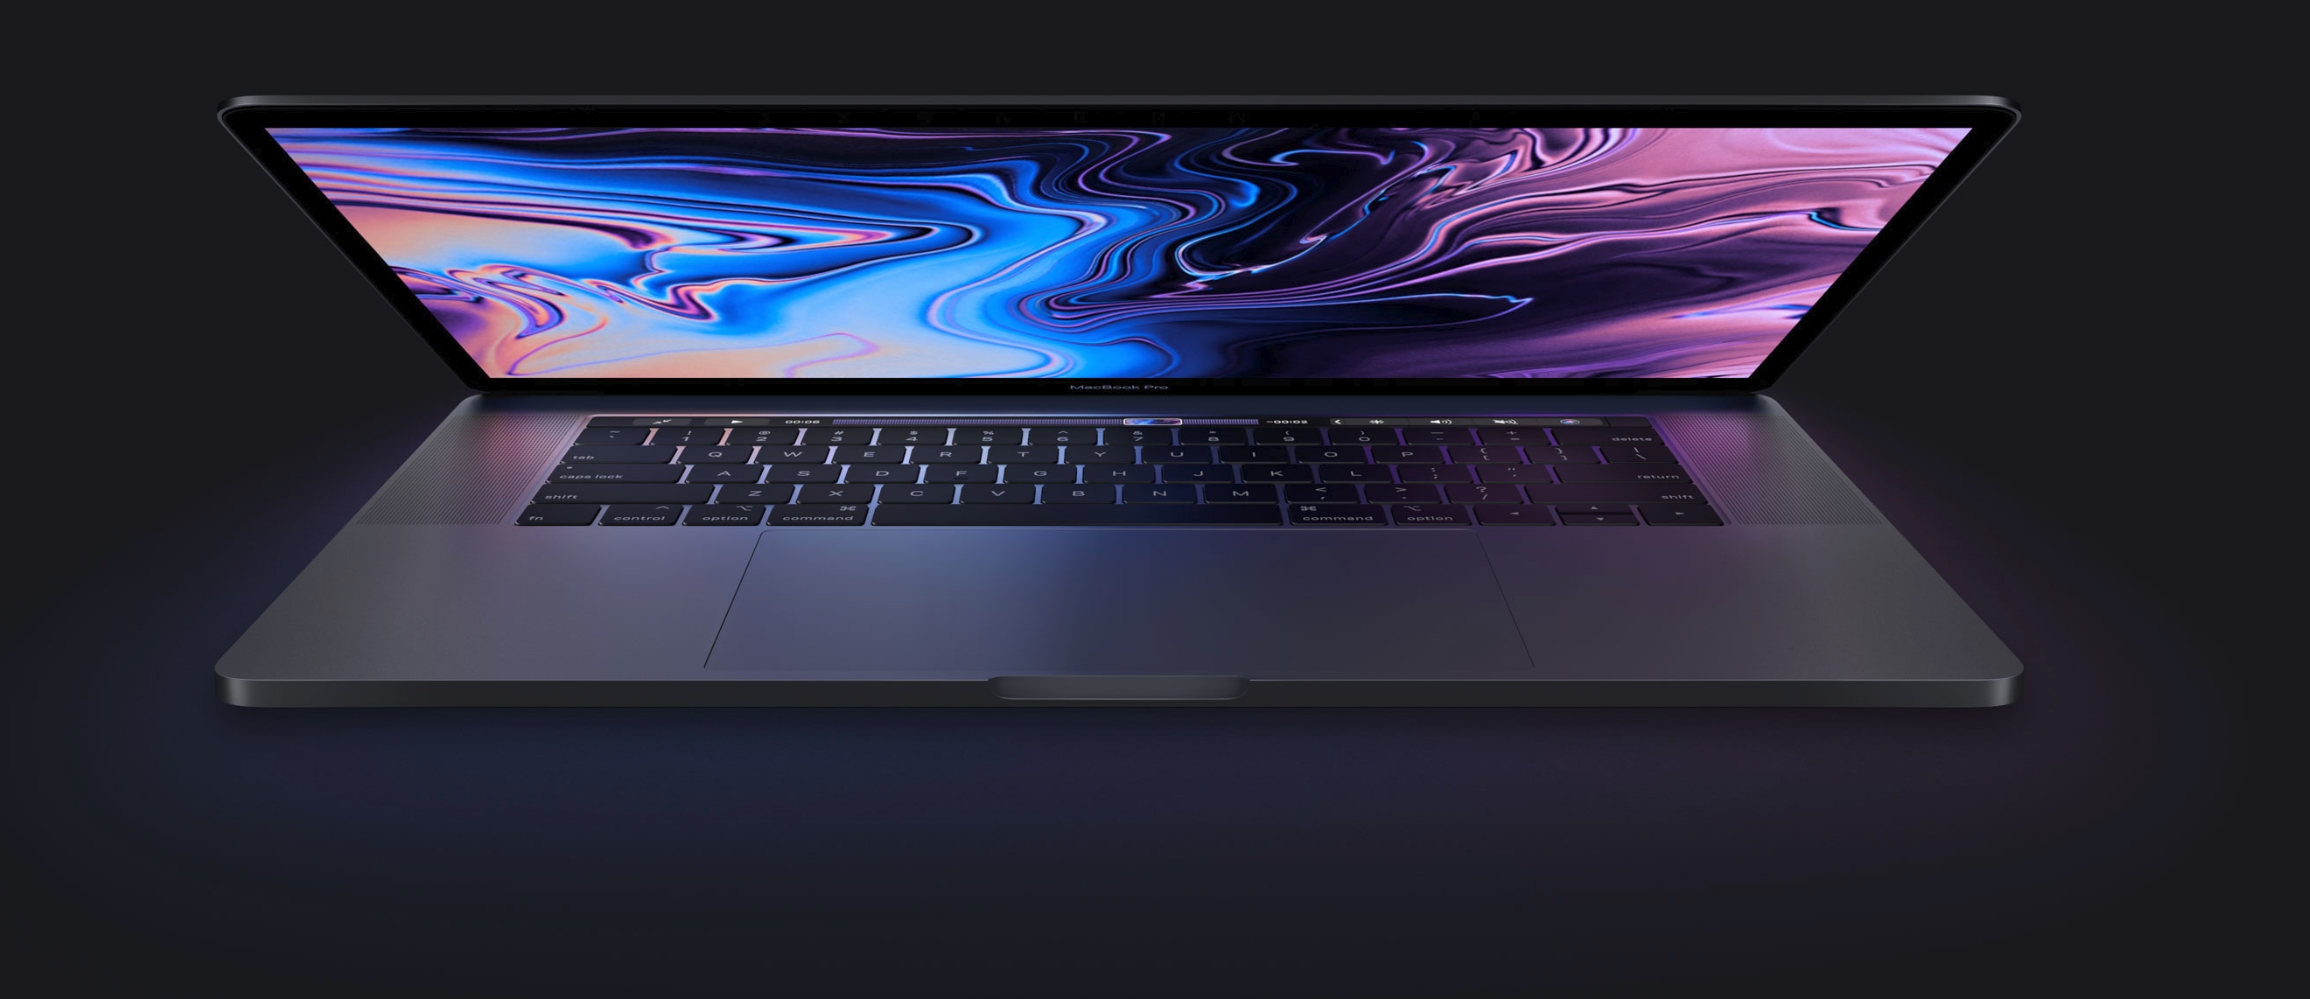 Flere nye Mac-er avslørt